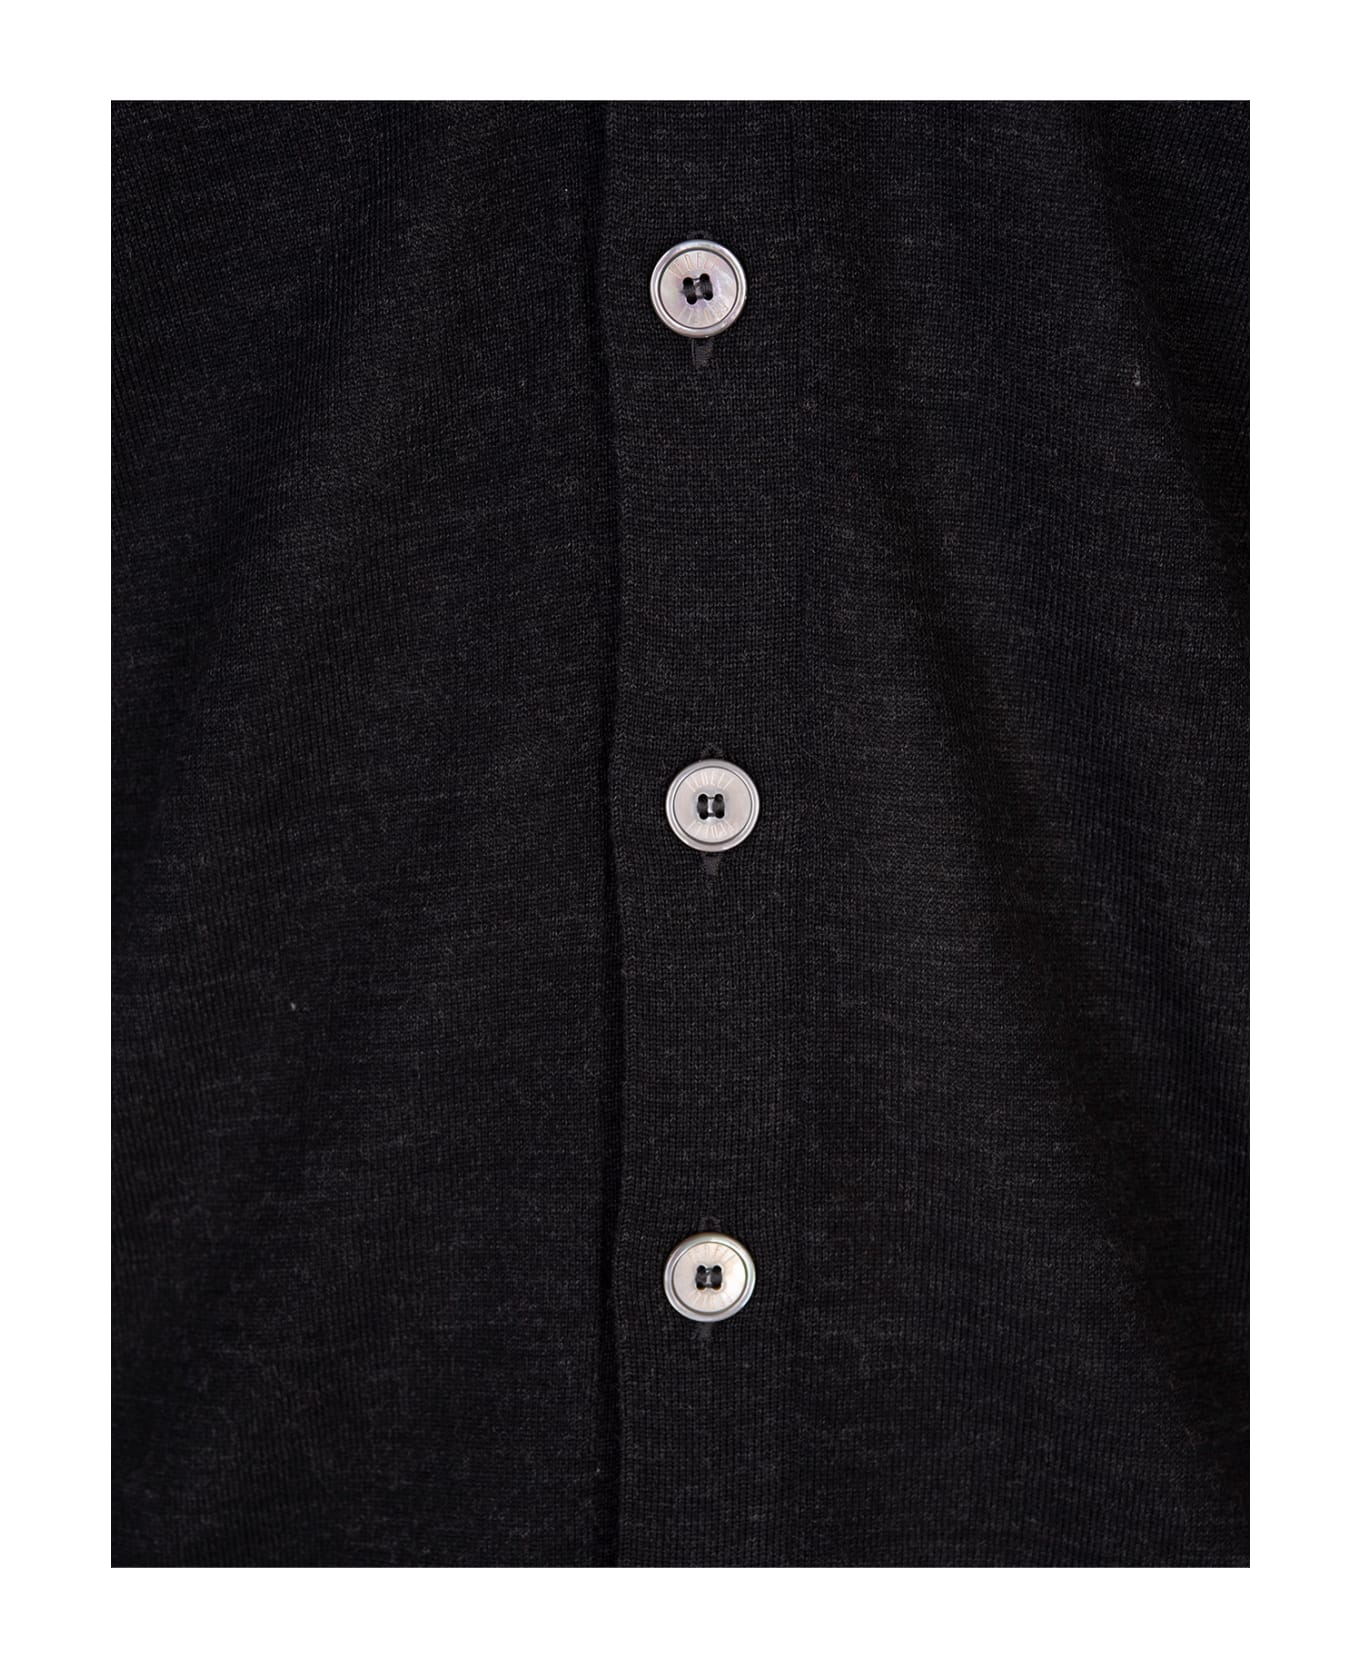 Fedeli Black Virgin Wool Cardigan With V-neckline - Black カーディガン